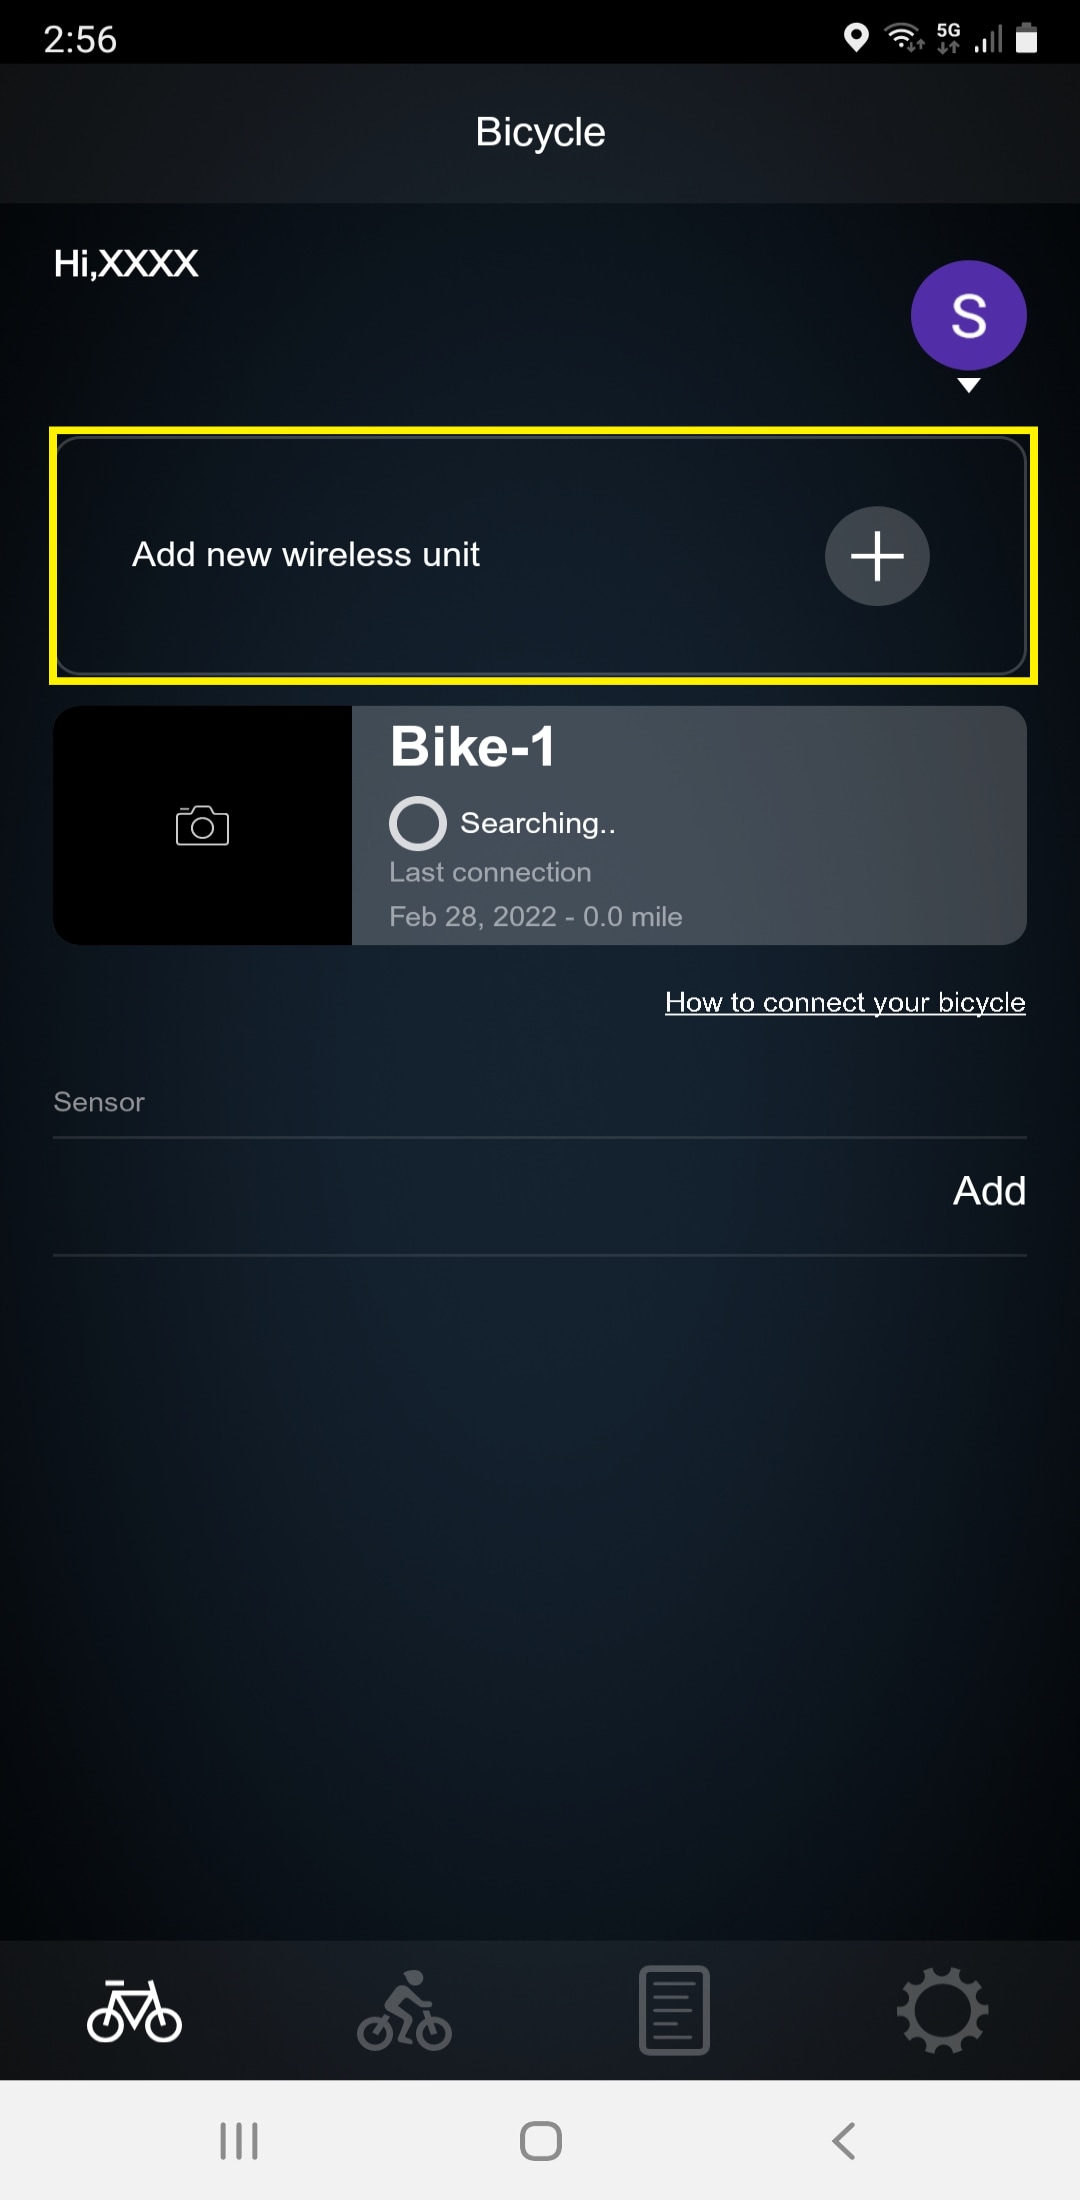 若无法连接自行车请点击添加新无线组件以便通过您当前使用的无线组件进行连接